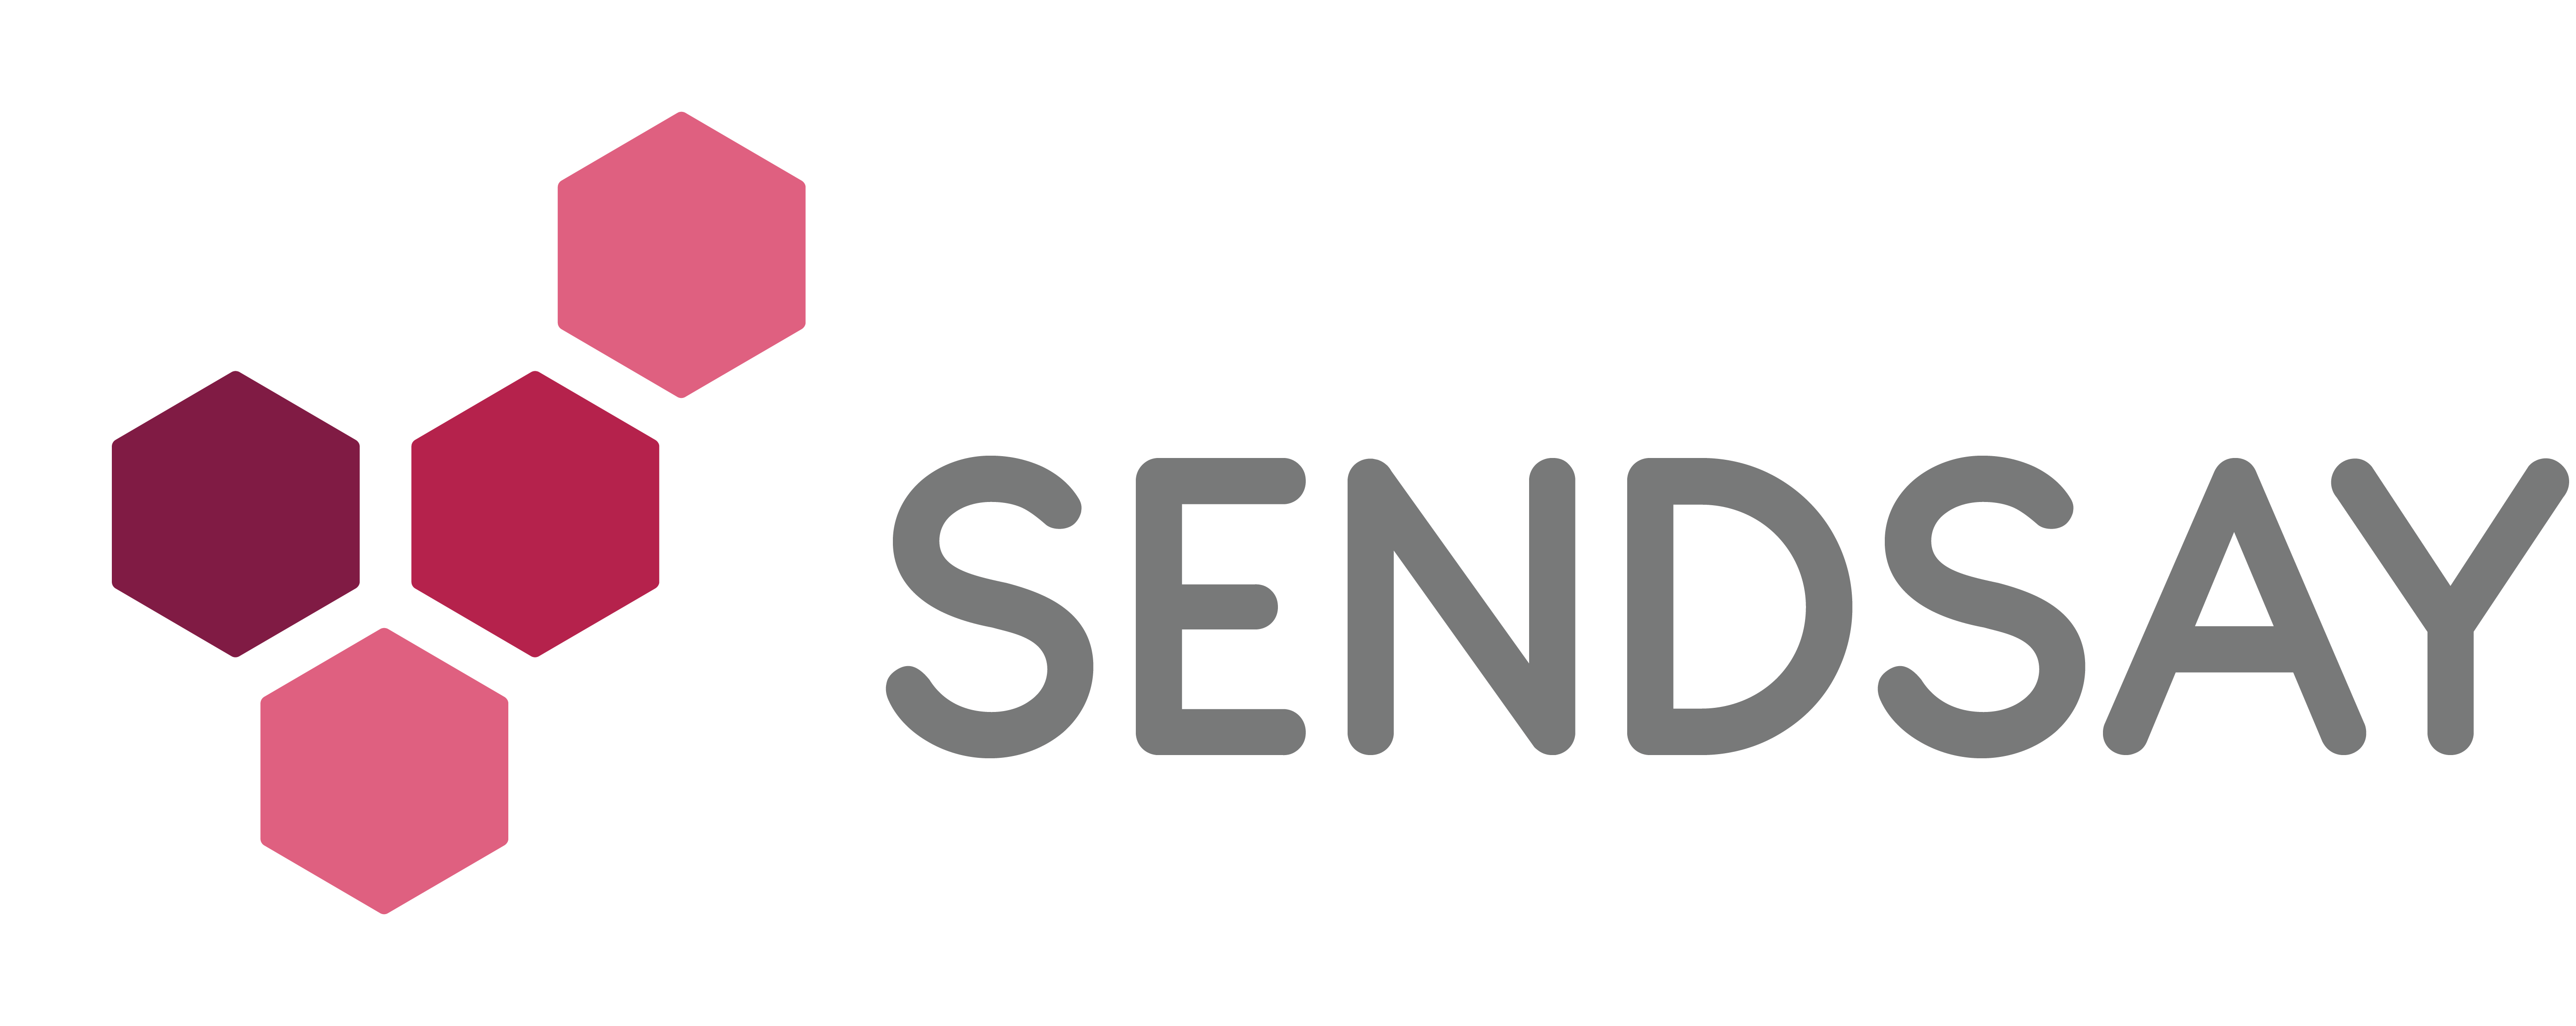 Sendsay. Sendsay логотип. Sendsay шаблоны. Sendsay логотип на прозрачном фоне. Https link sendsay ru